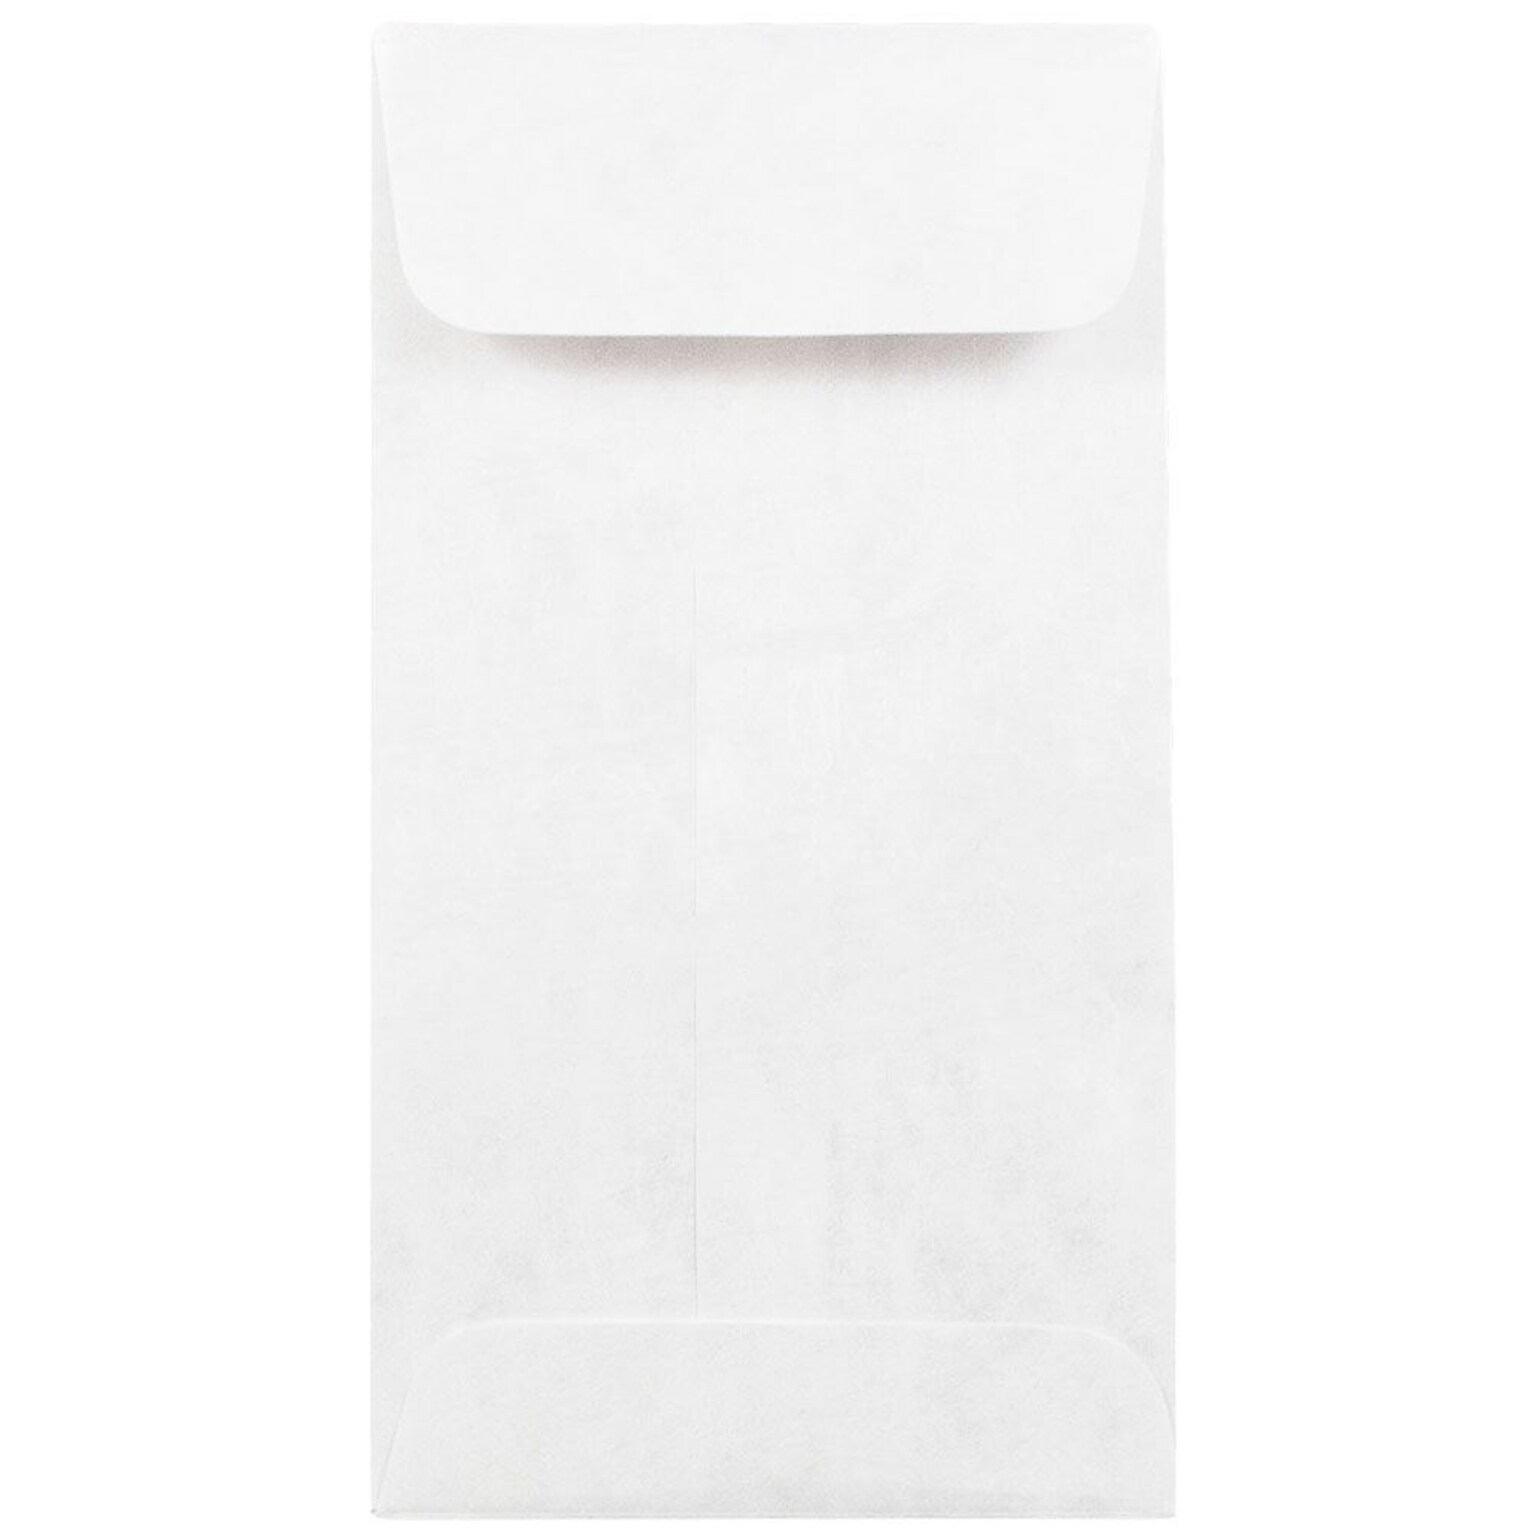 JAM Paper #7 Coin Tear-Proof Tyvek Open End Envelopes, 3.5 x 6.5, White, 50/Pack (2131076C)